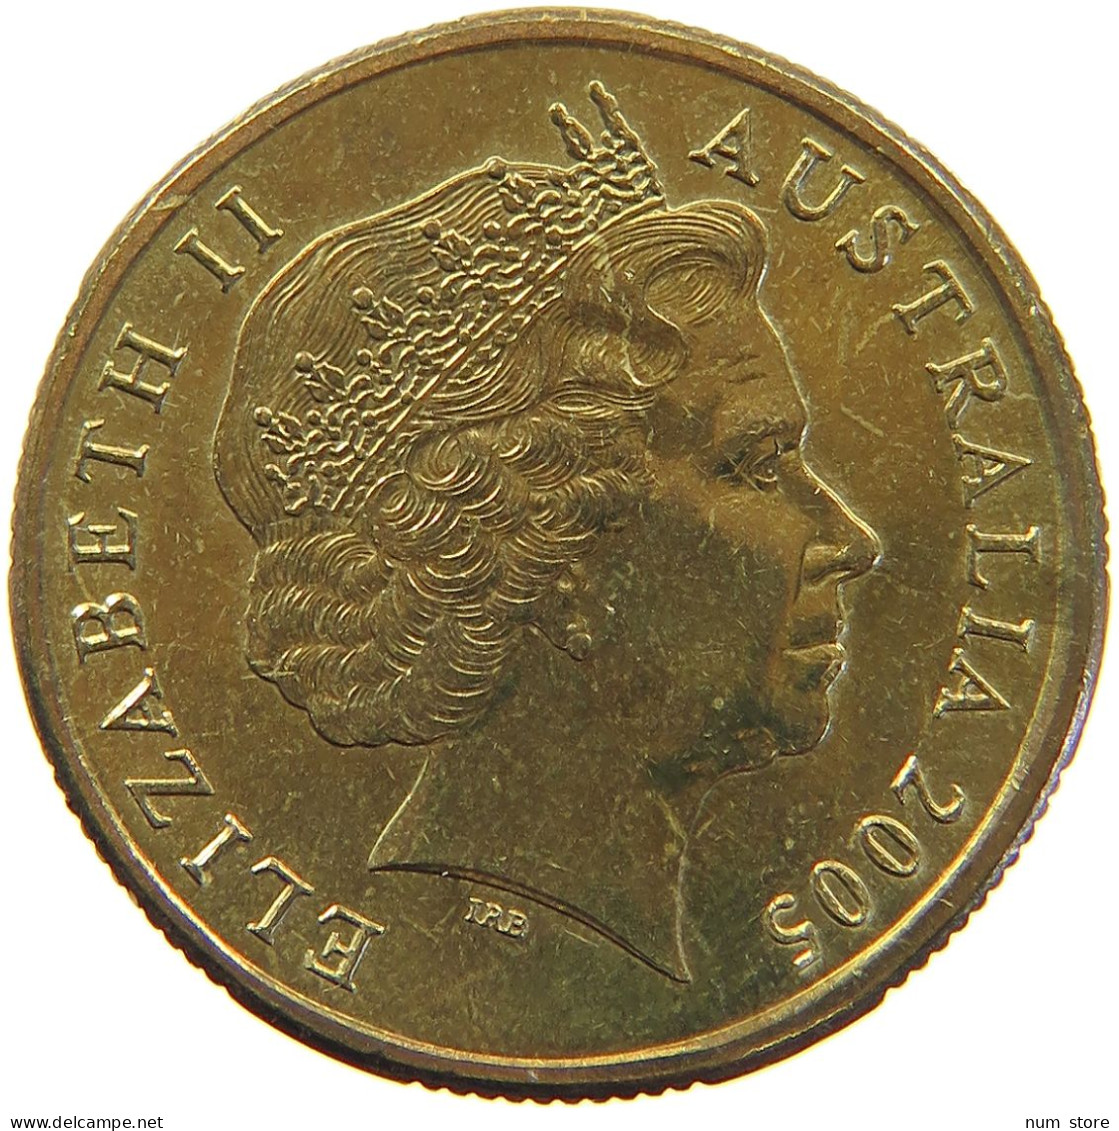 AUSTRALIA DOLLAR 2005 ELIZABETH II. (1952-2022) #MA 066505 - Dollar